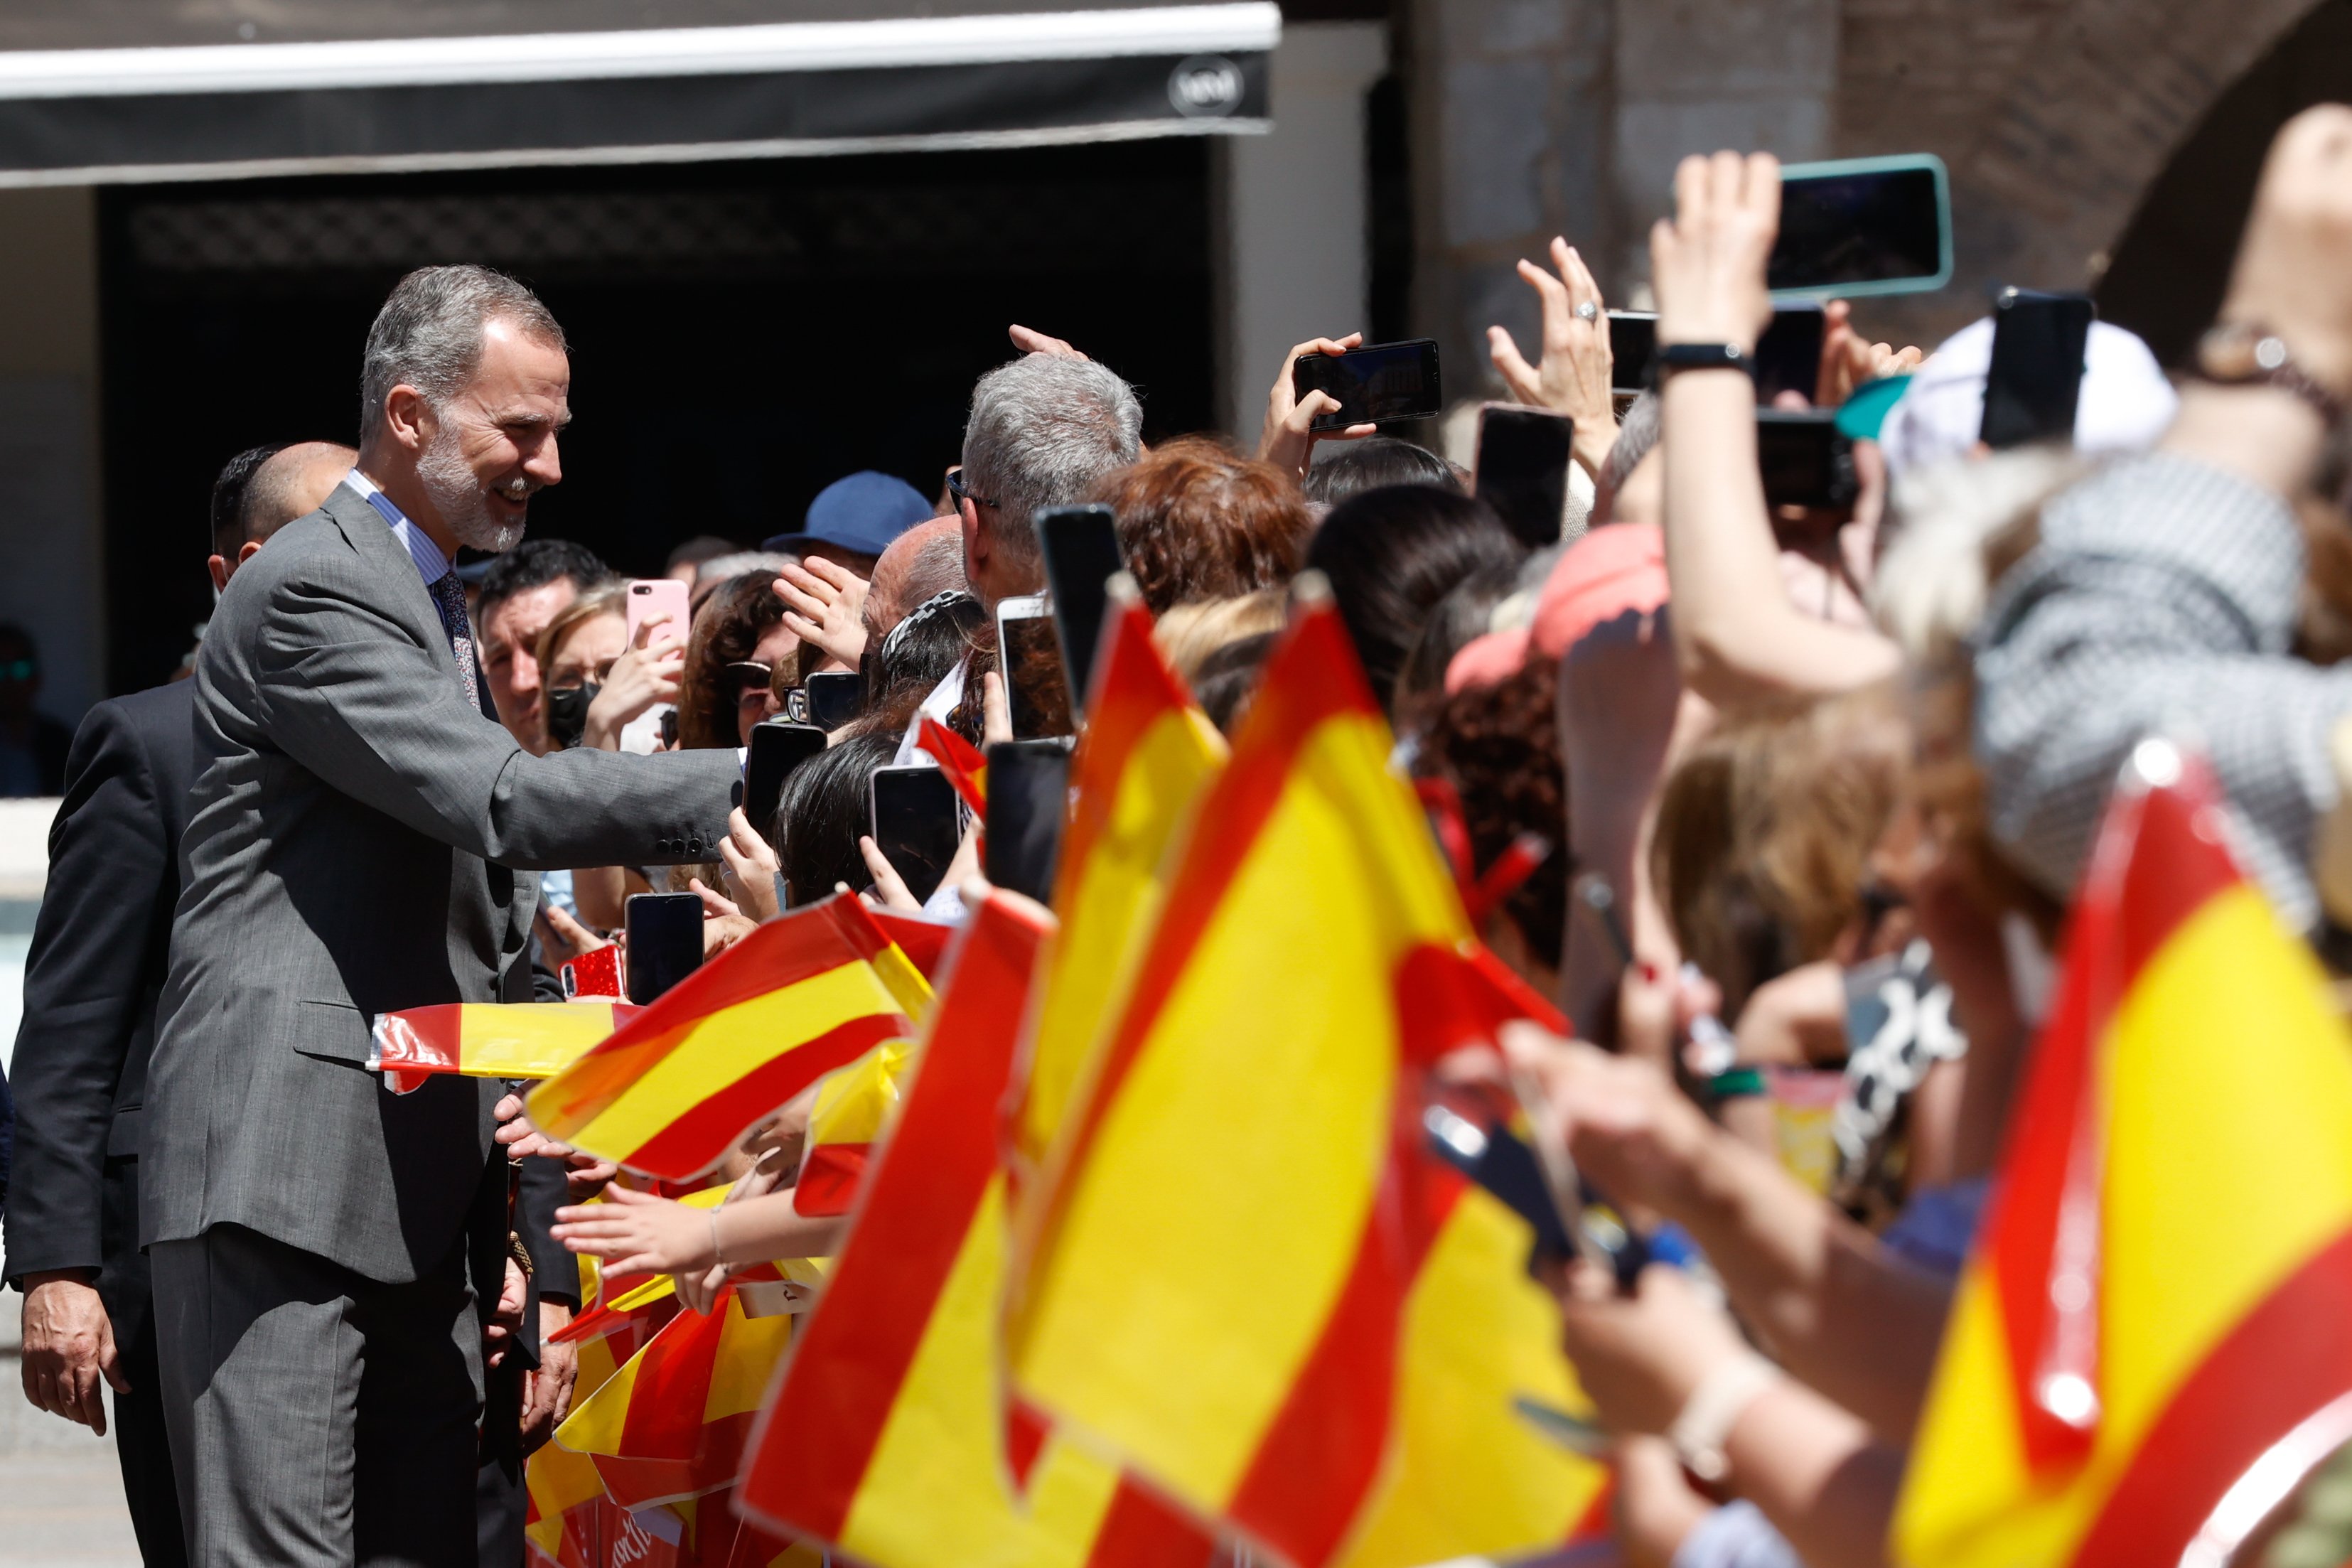 'El Jueves' destrossa els patriotes espanyols amb imatge brutal sobre la bandera